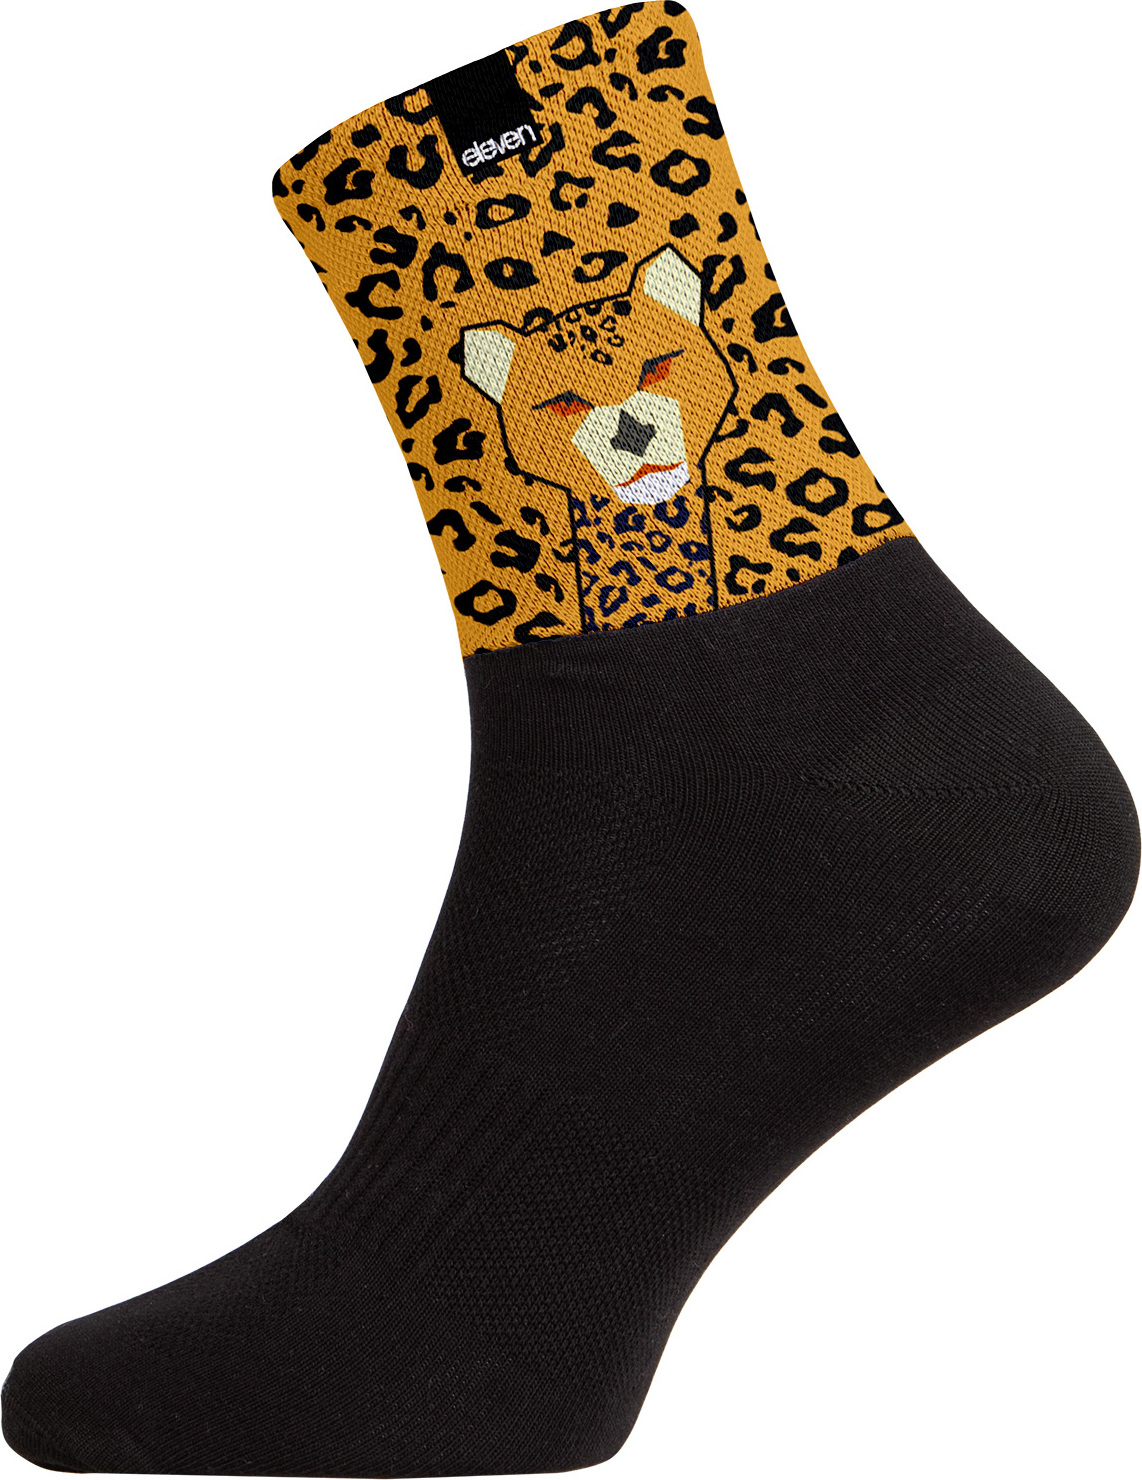 Ponožky ELEVEN Cuba Cheetah černé Velikost: S (36-38)